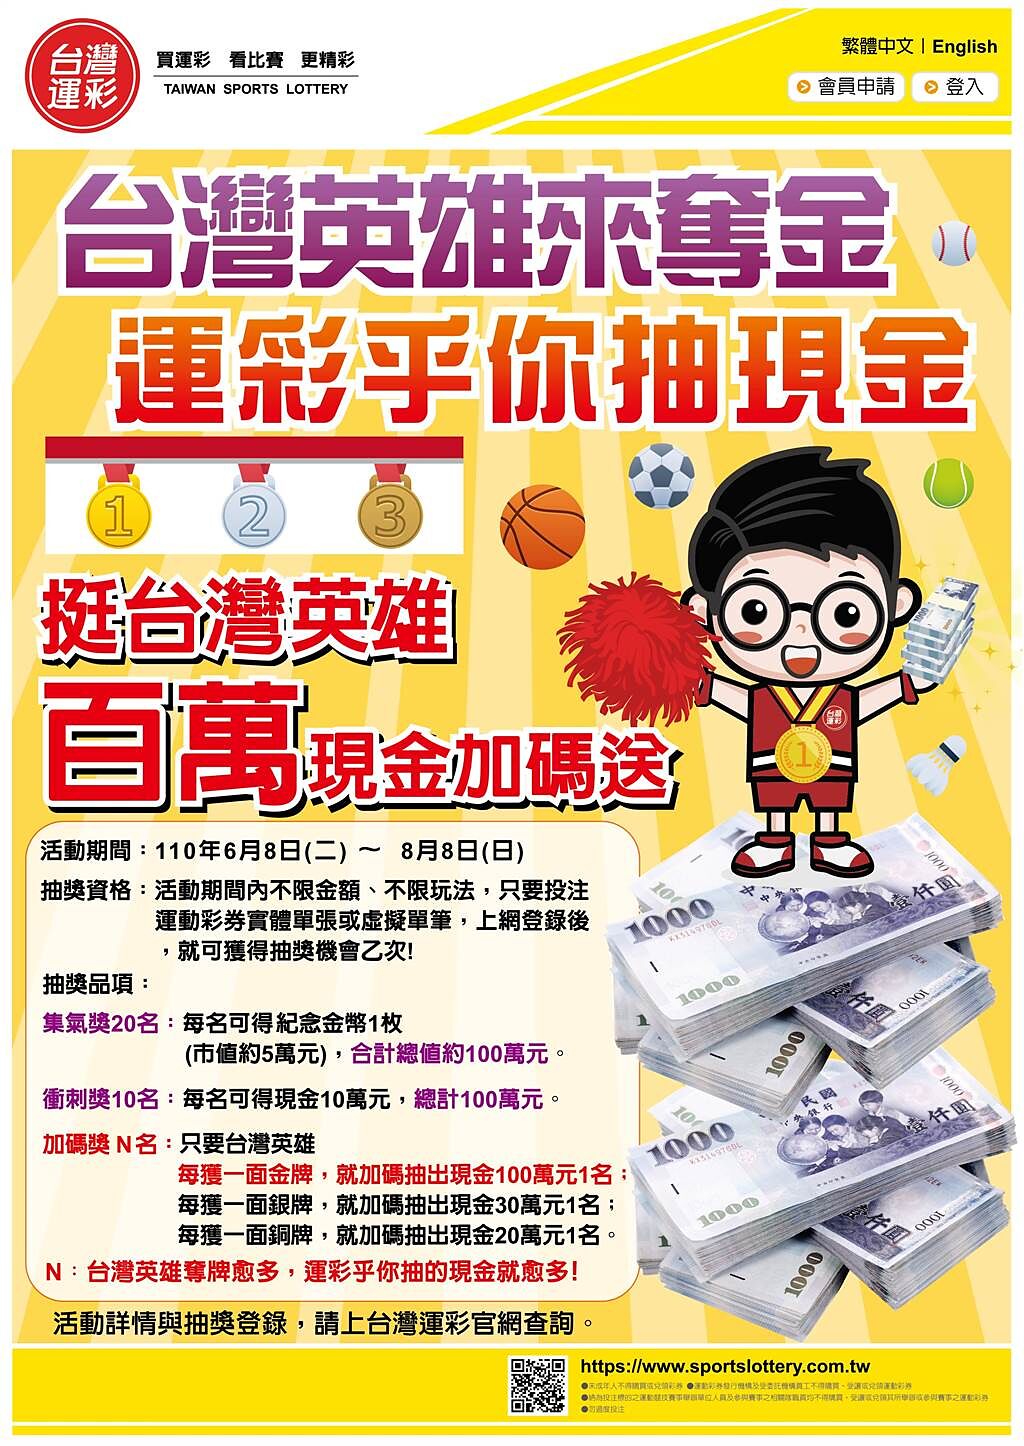 台灣運彩「台灣英雄來奪金  運彩乎你抽現金」活動海報。(台灣運彩提供)